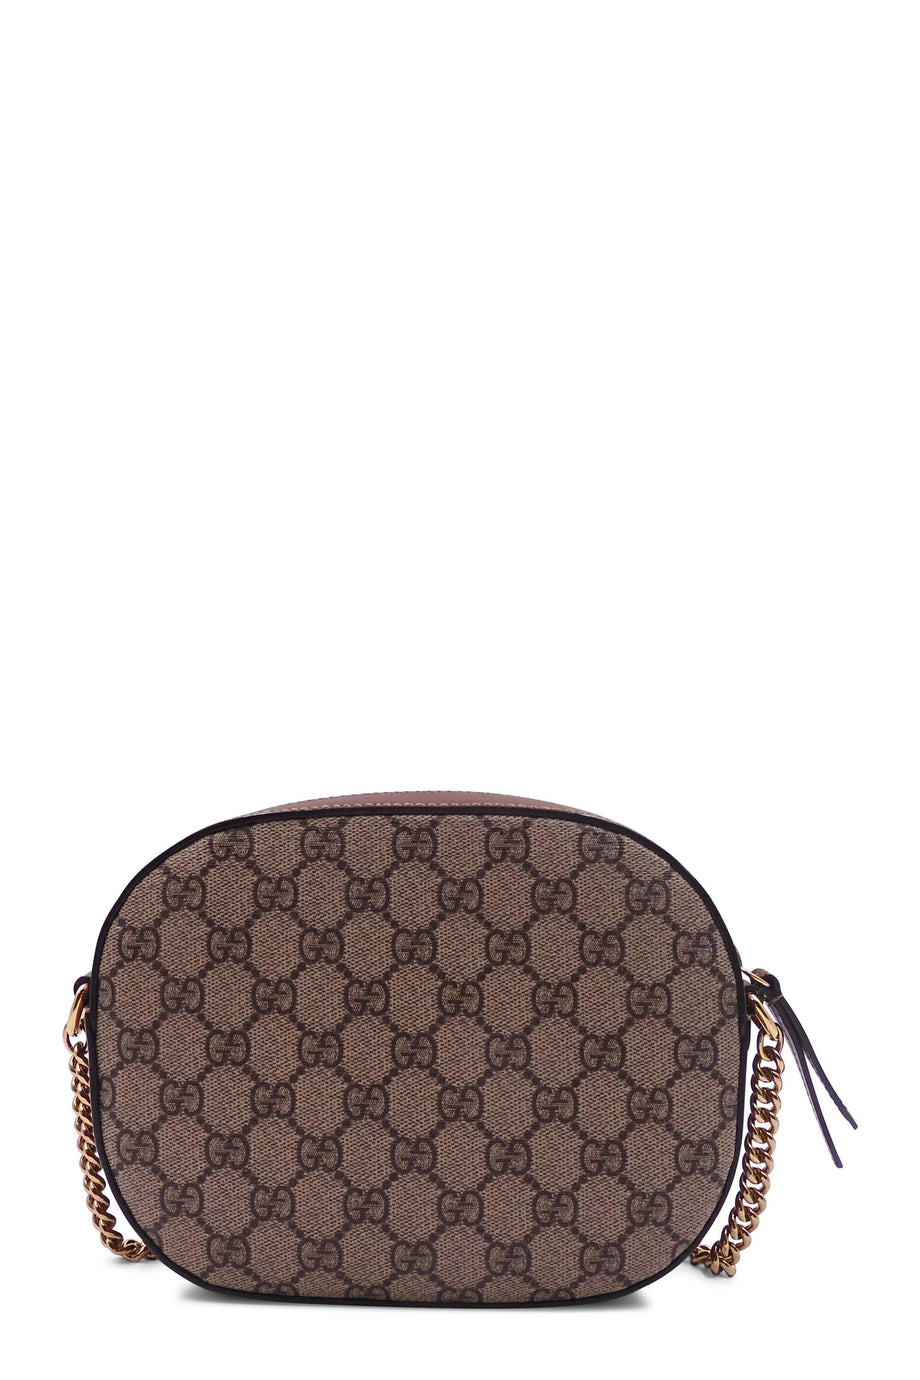 Gucci Purse Straps Women's Shoulder Bags | ShopStyle